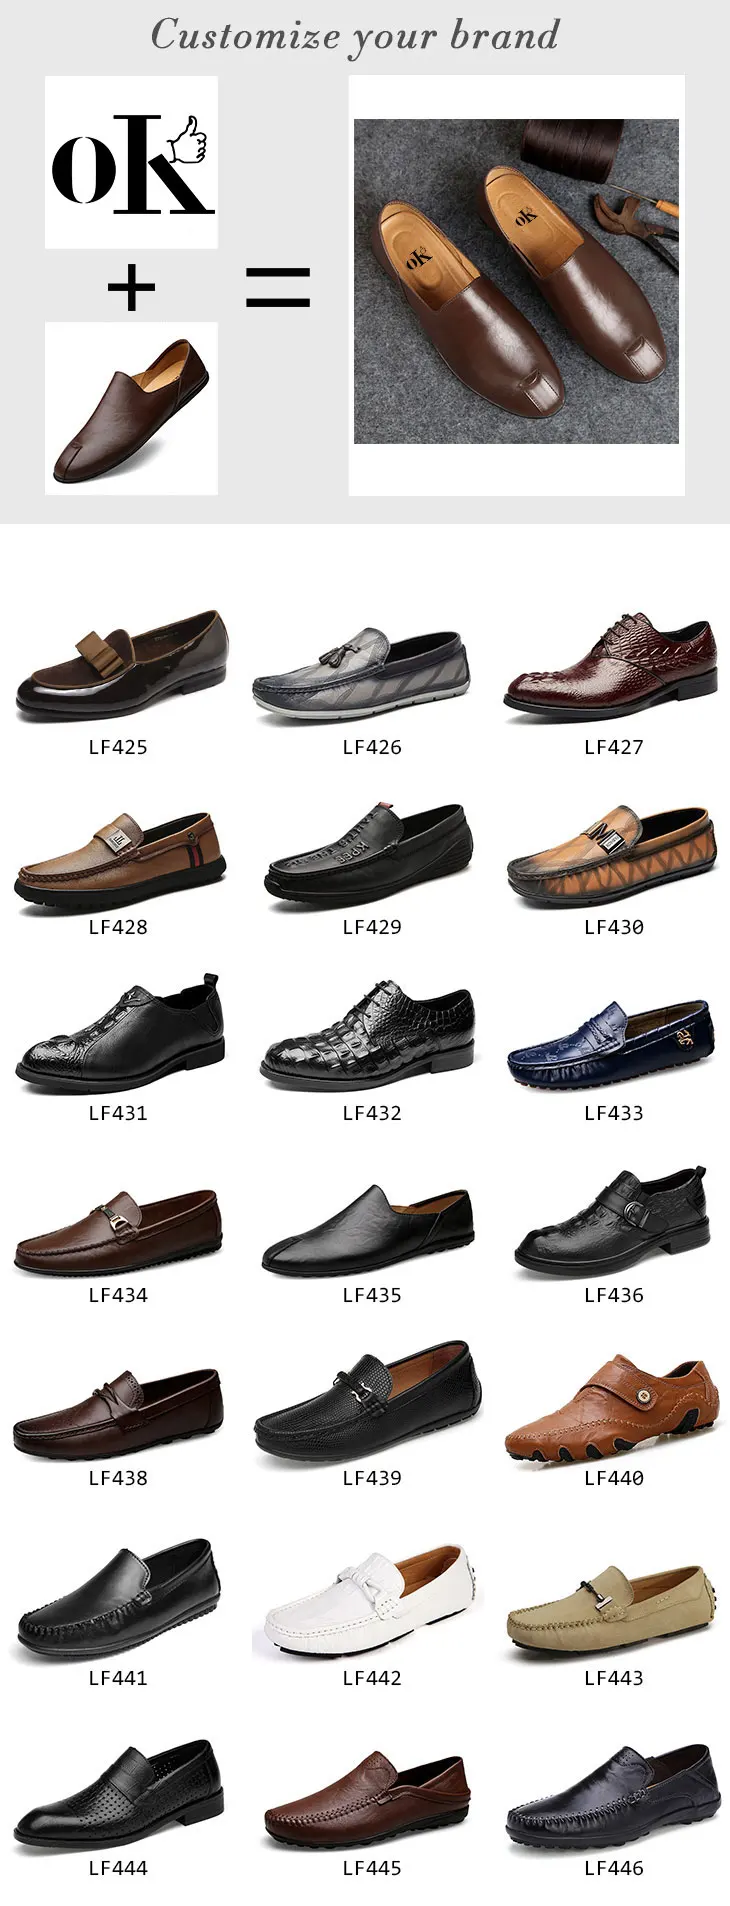 Название мужских ботинок. Модели мужских туфель названия. Формы мужской обуви. Мужская обувь названия моделей.